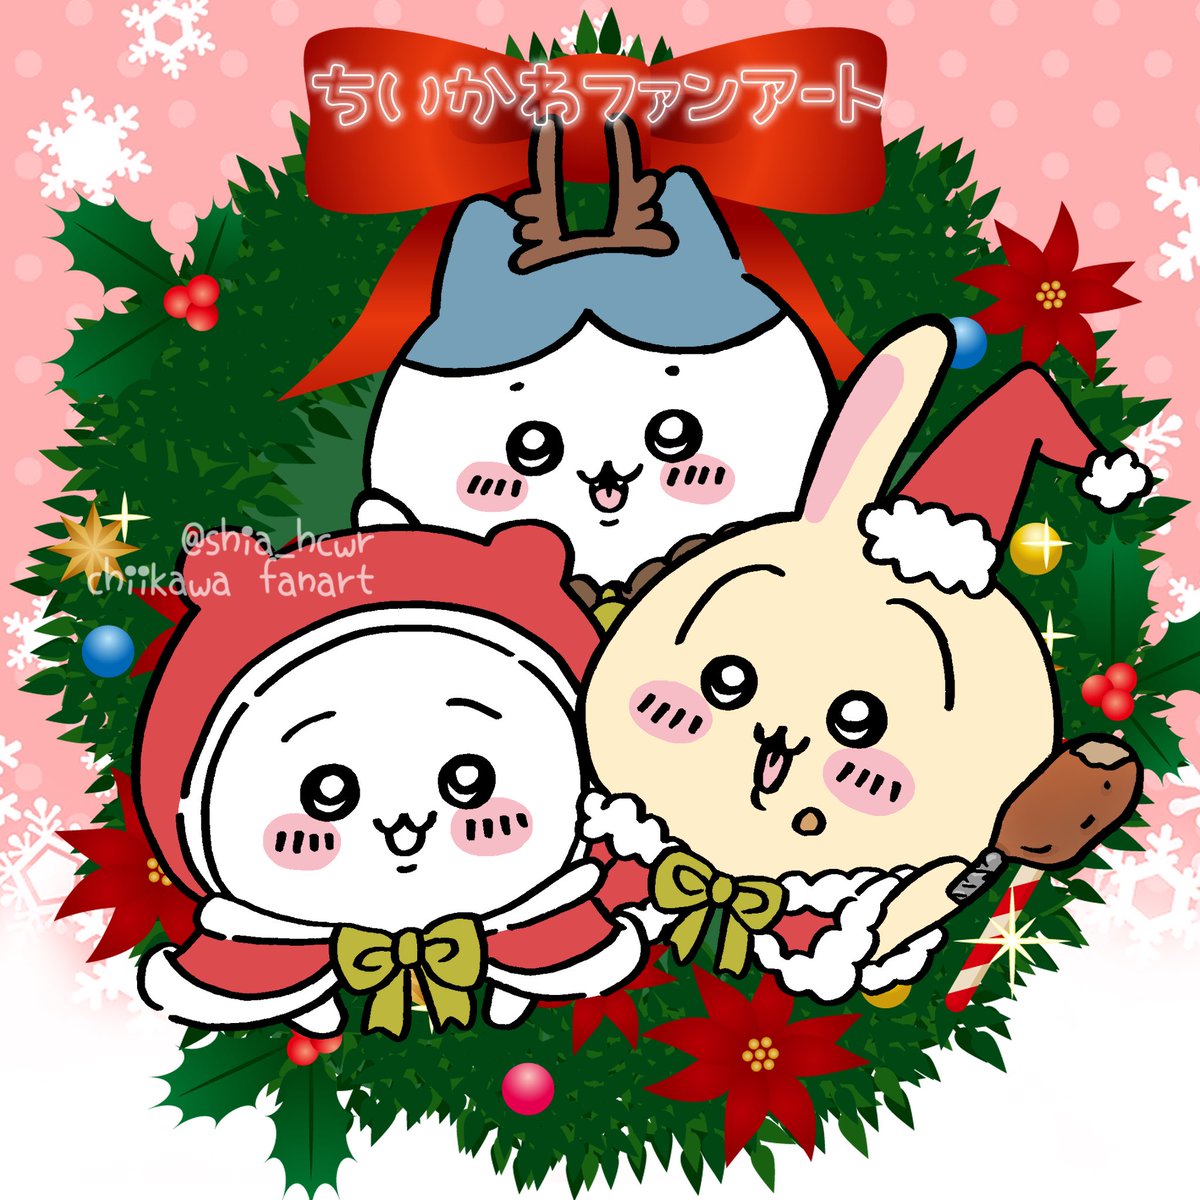 「Merry X'mas#ちいかわファンアート 」|しあ*´꒳`ฅのイラスト